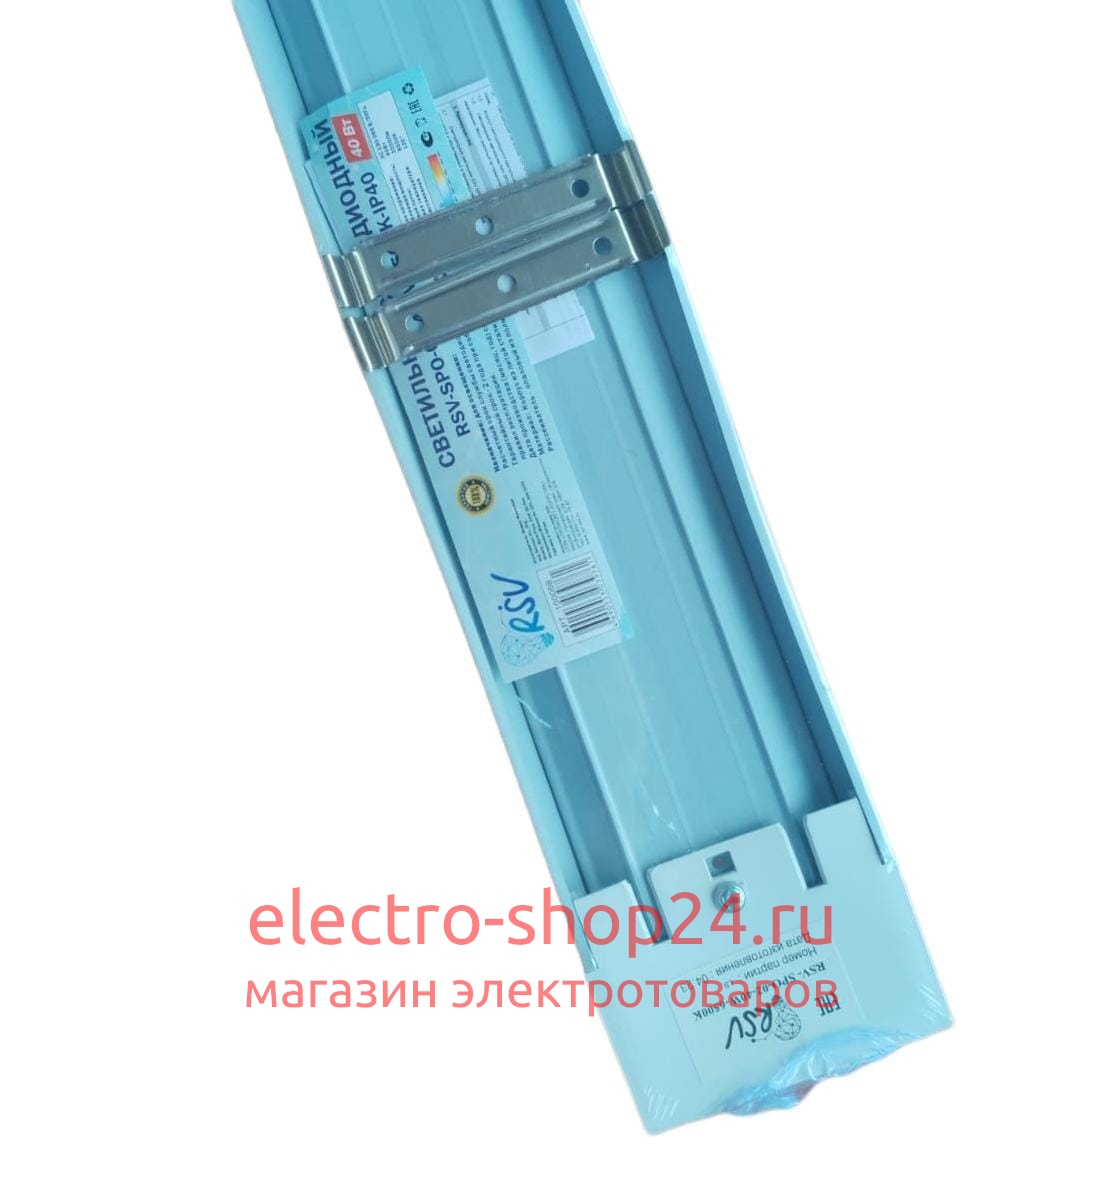 Светодиодный светильник RSV-SPO-02-40W-4000K-IP40 1200mm 100139 100139 - магазин электротехники Electroshop